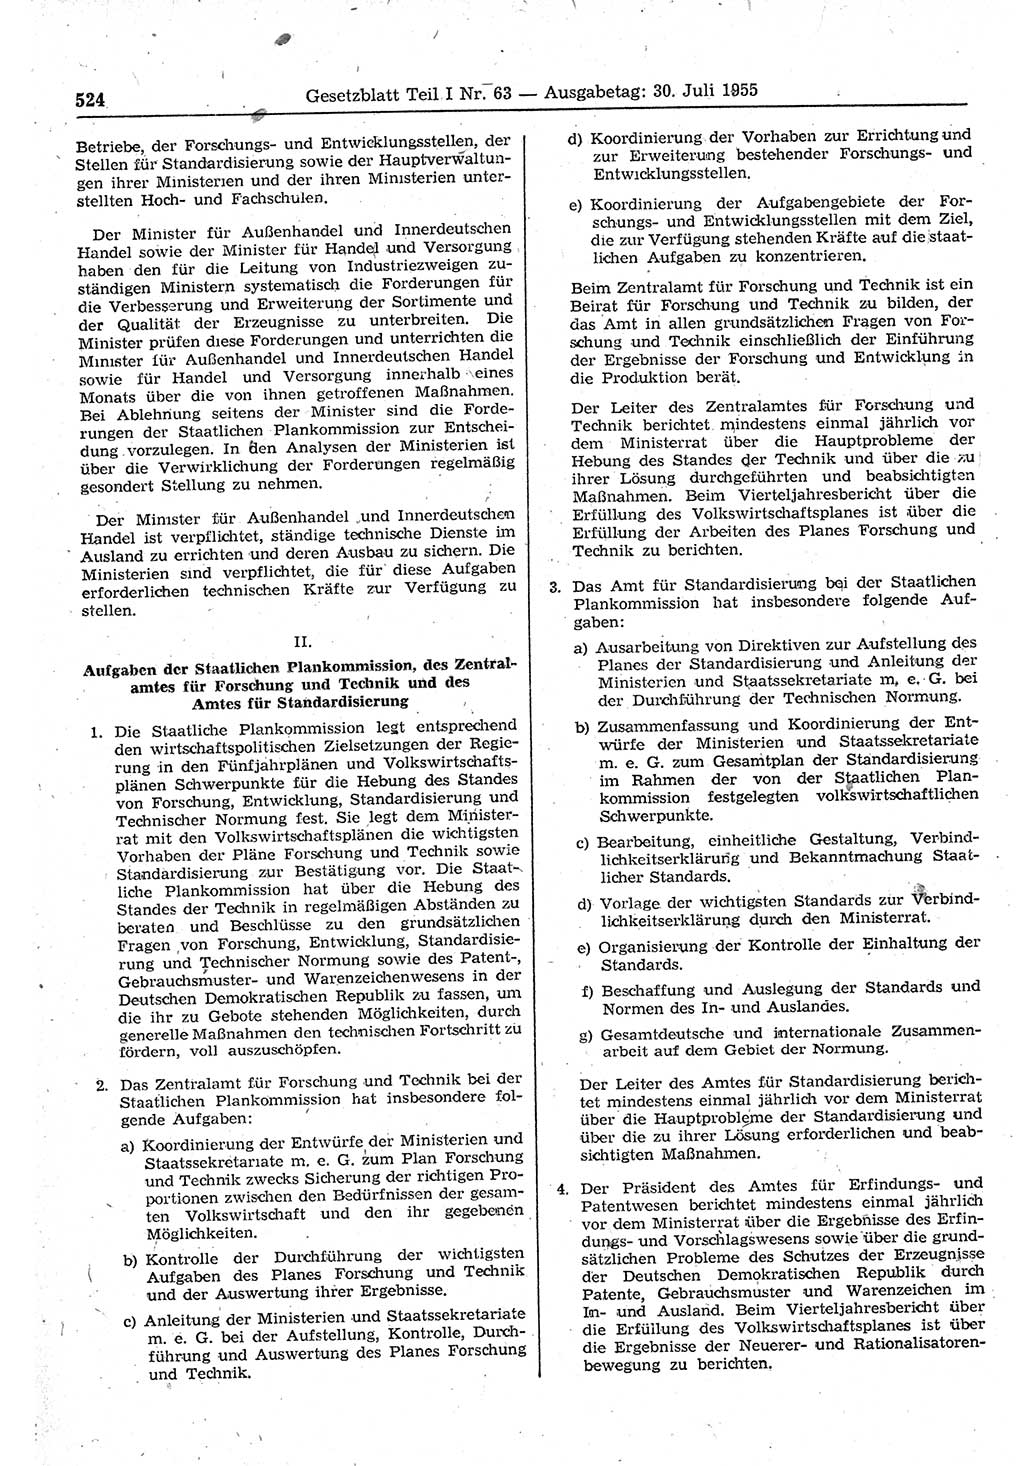 Gesetzblatt (GBl.) der Deutschen Demokratischen Republik (DDR) Teil Ⅰ 1955, Seite 524 (GBl. DDR Ⅰ 1955, S. 524)